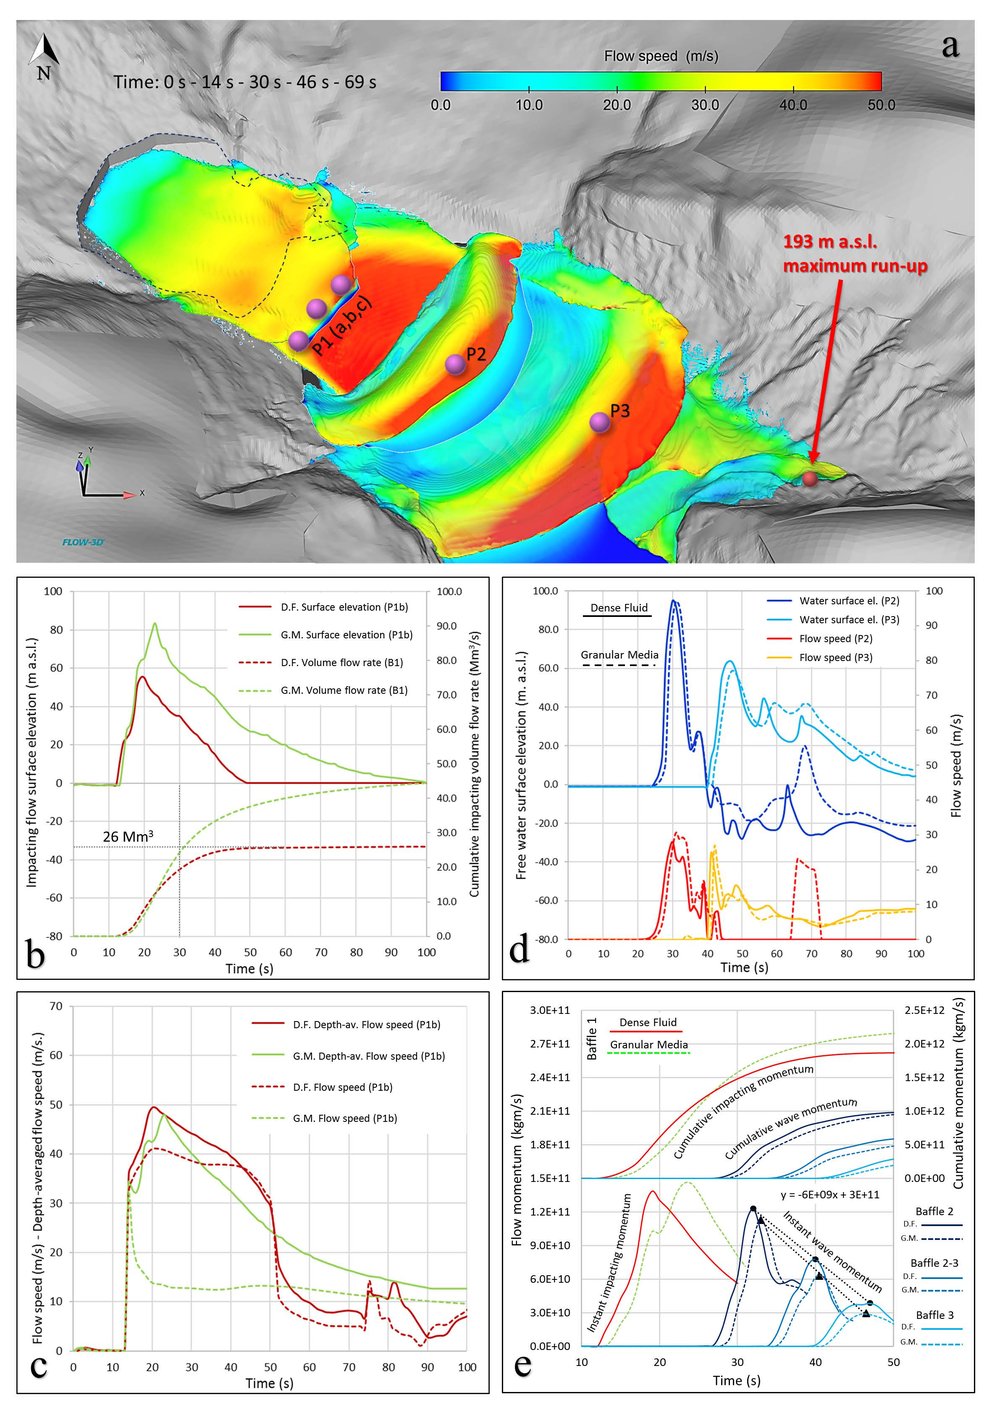 Franco_etal_Analysis of landslide induced impulse waves_fig1